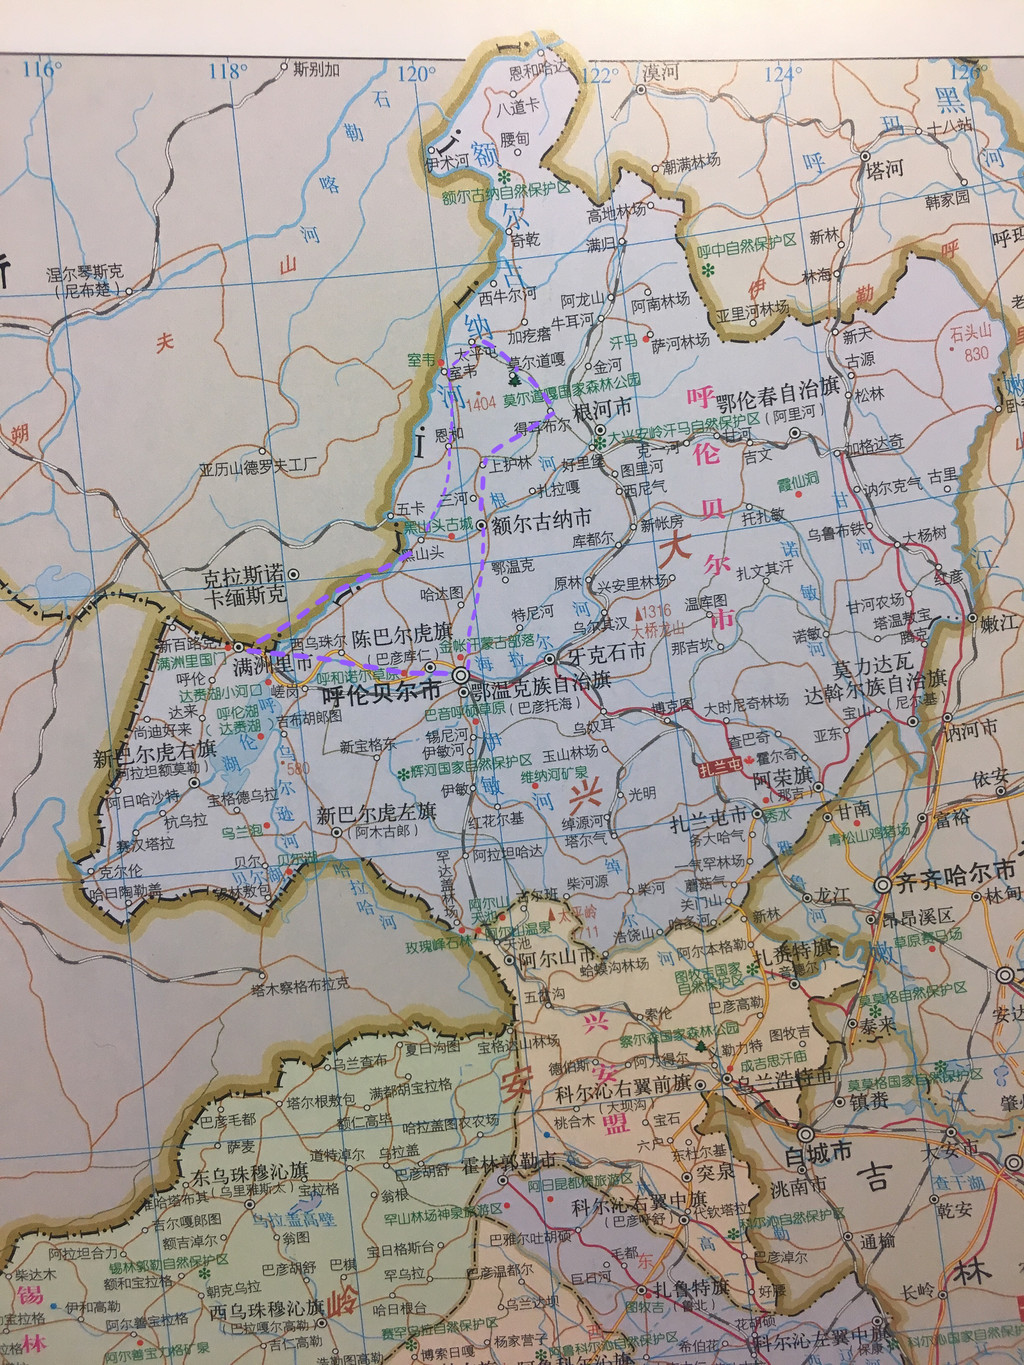 而位于内蒙古东北部的呼伦贝尔市一地已与两个省和两个国家相邻,这